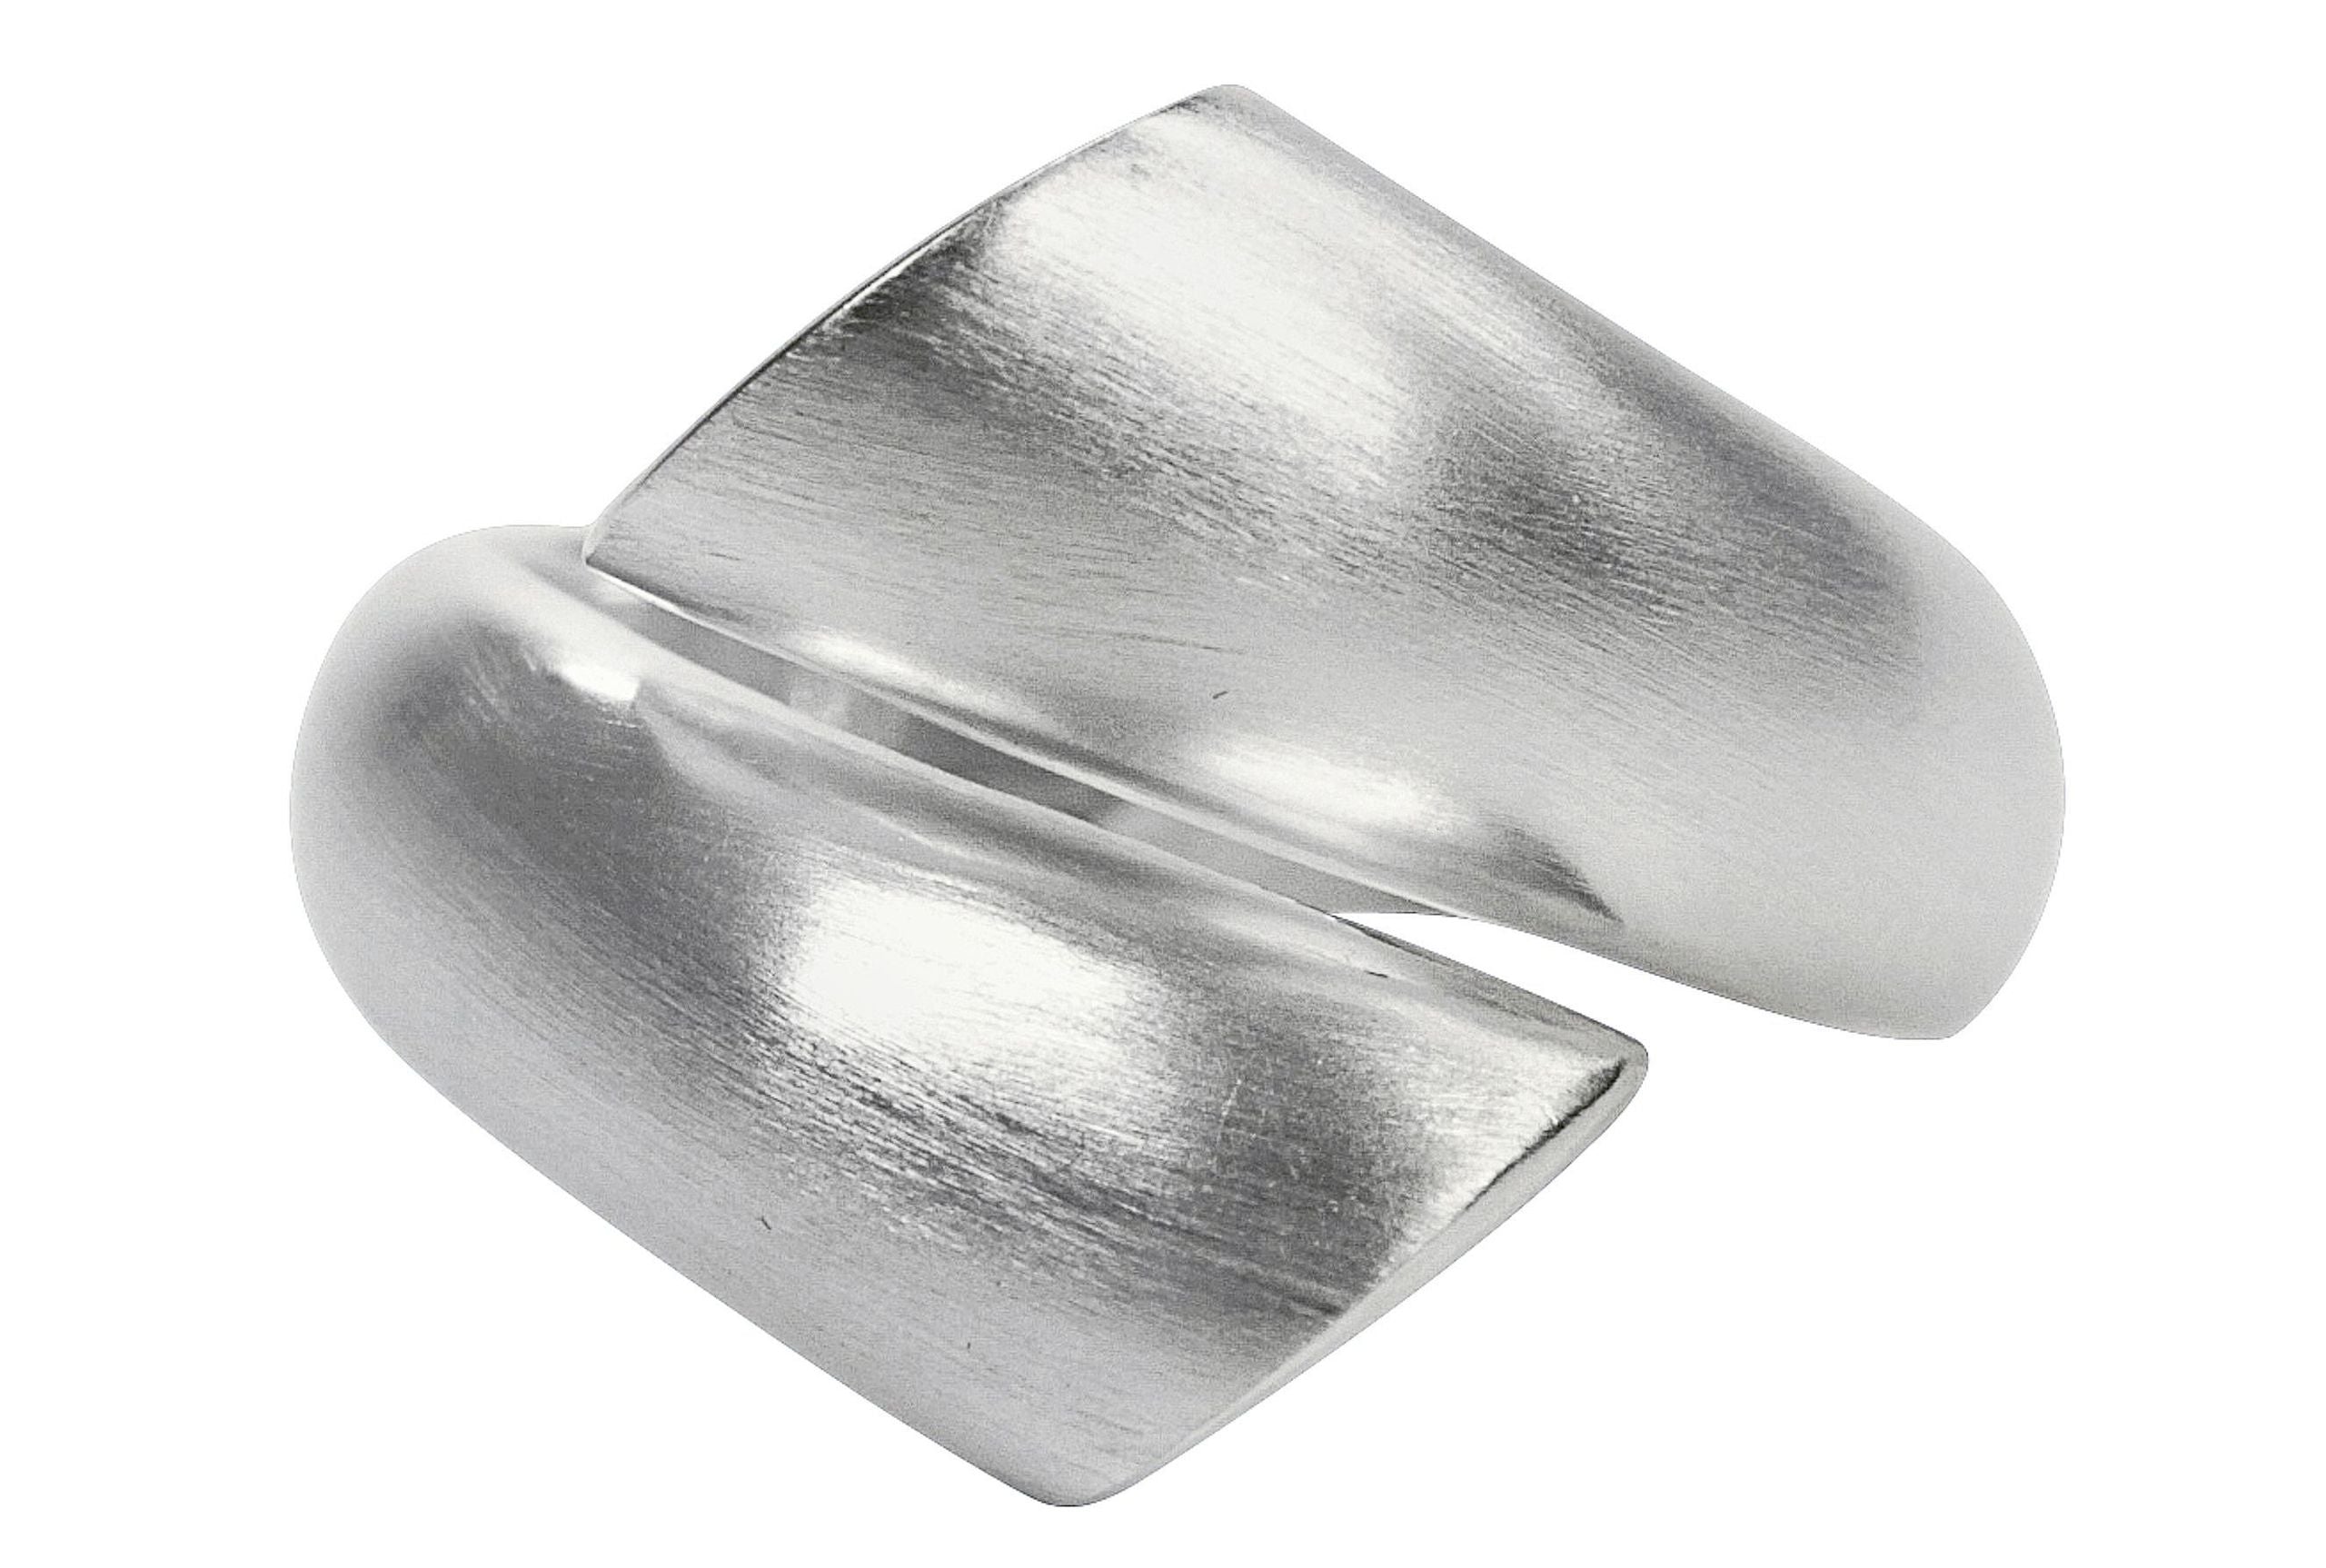 Geschwungener Ring aus Silber, dessen Enden nicht verbunden sind und einander offen gegenüberstehen.